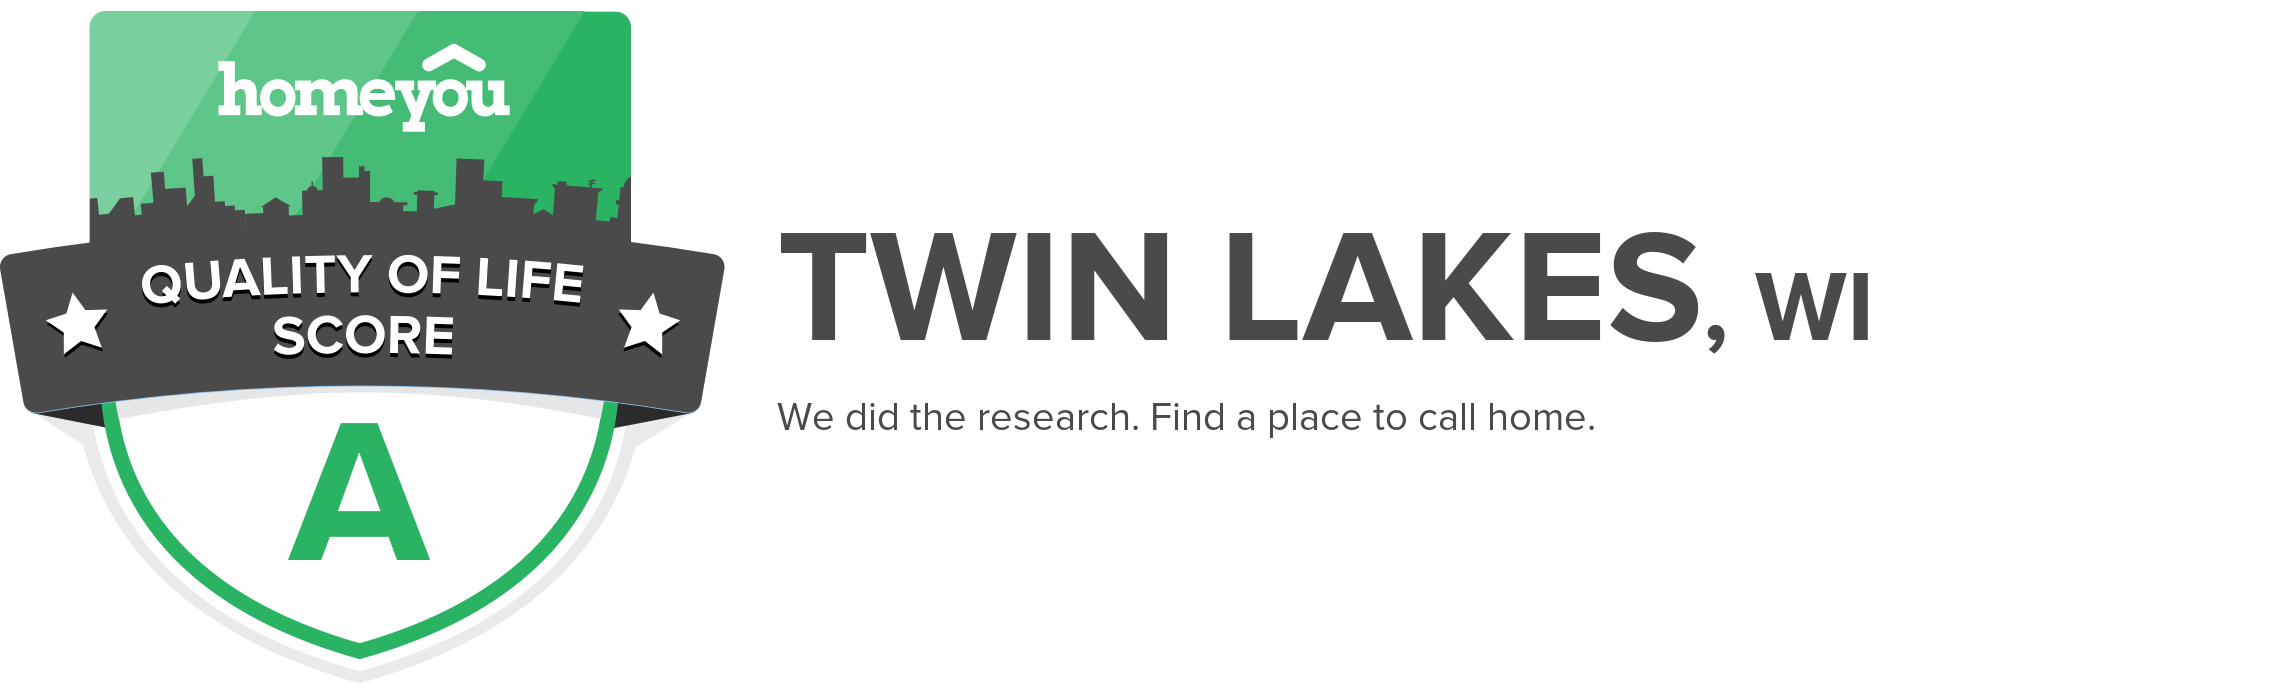 Twin Lakes, WI